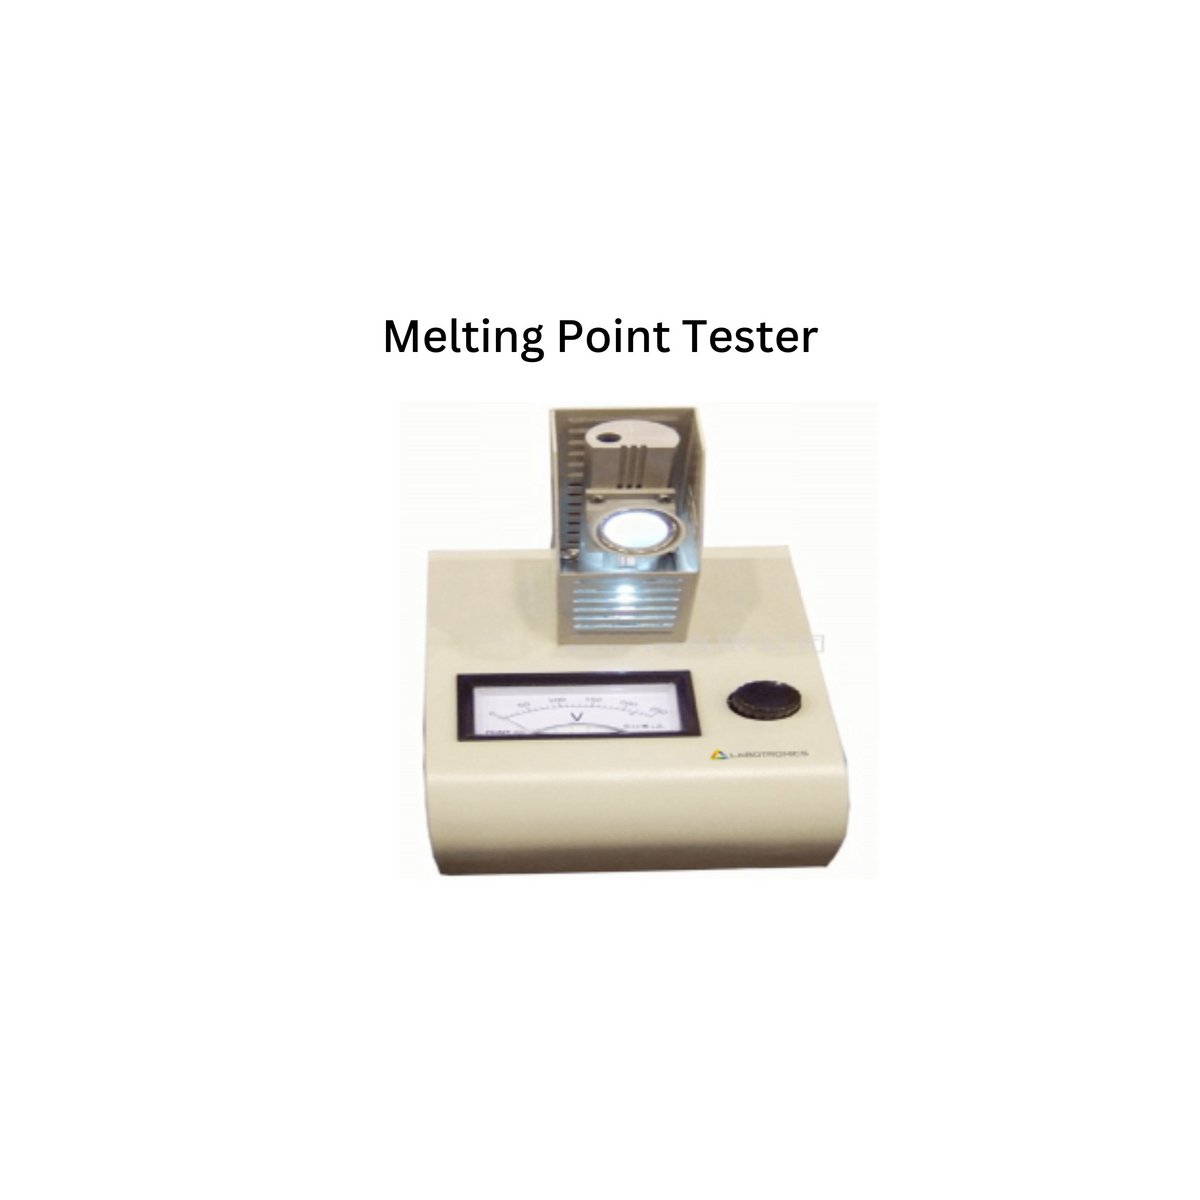 Melting Point Tester.jpg